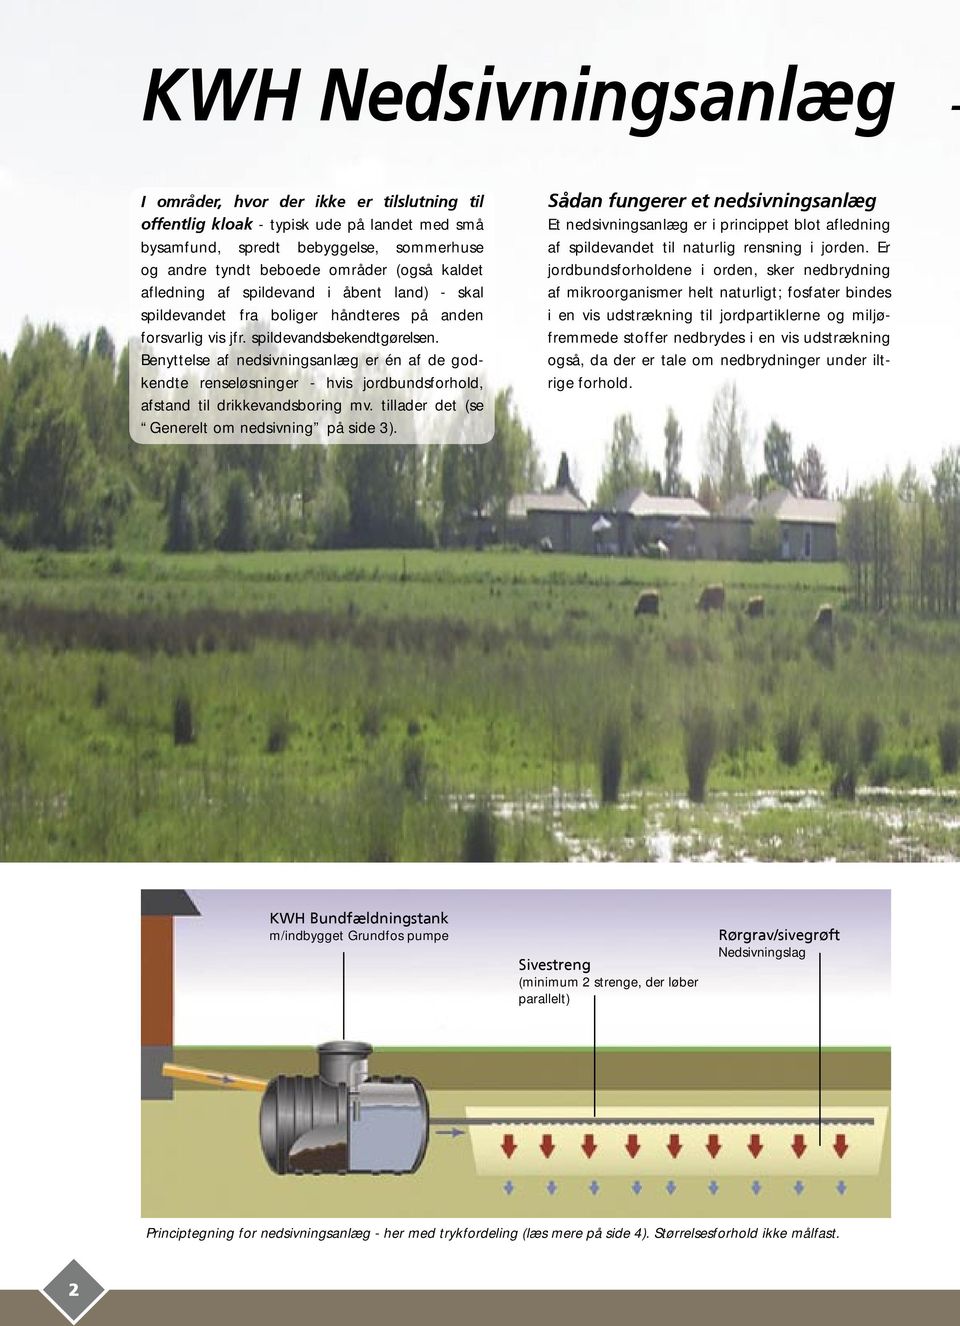 Benyttelse af nedsivningsanlæg er én af de godkendte renseløsninger - hvis jordbundsforhold, afstand til drikkevandsboring mv. tillader det (se Generelt om nedsivning på side 3).